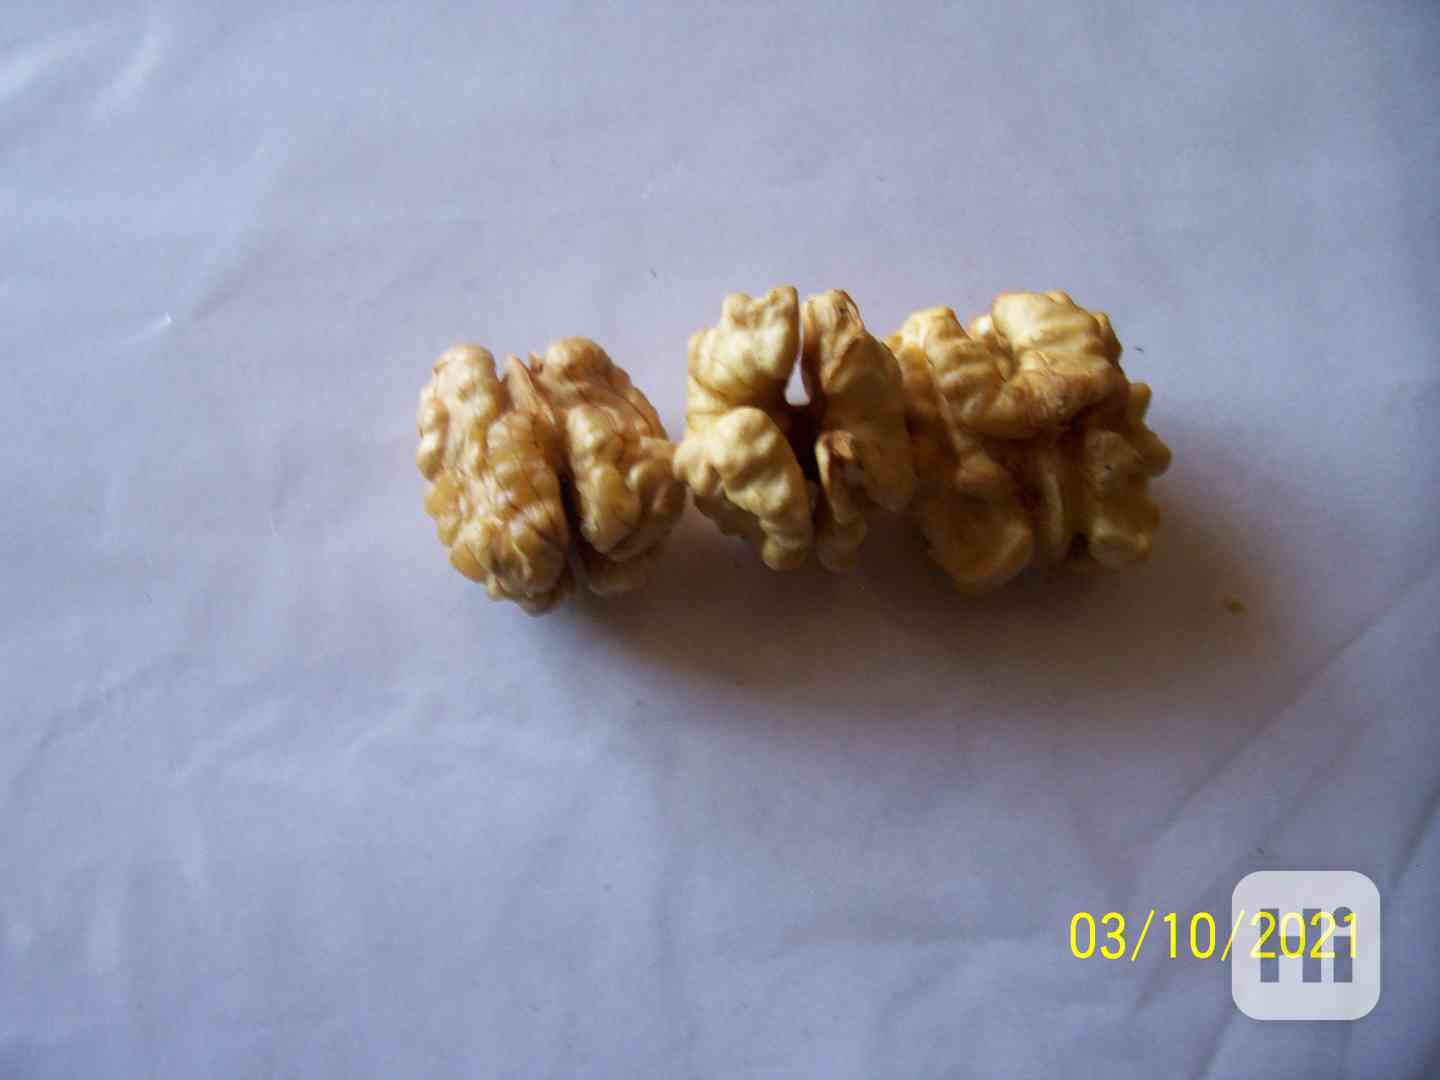  Čerstvé Vlašské ořechy exkluzivně loupané ,jako celá jádra  - foto 1